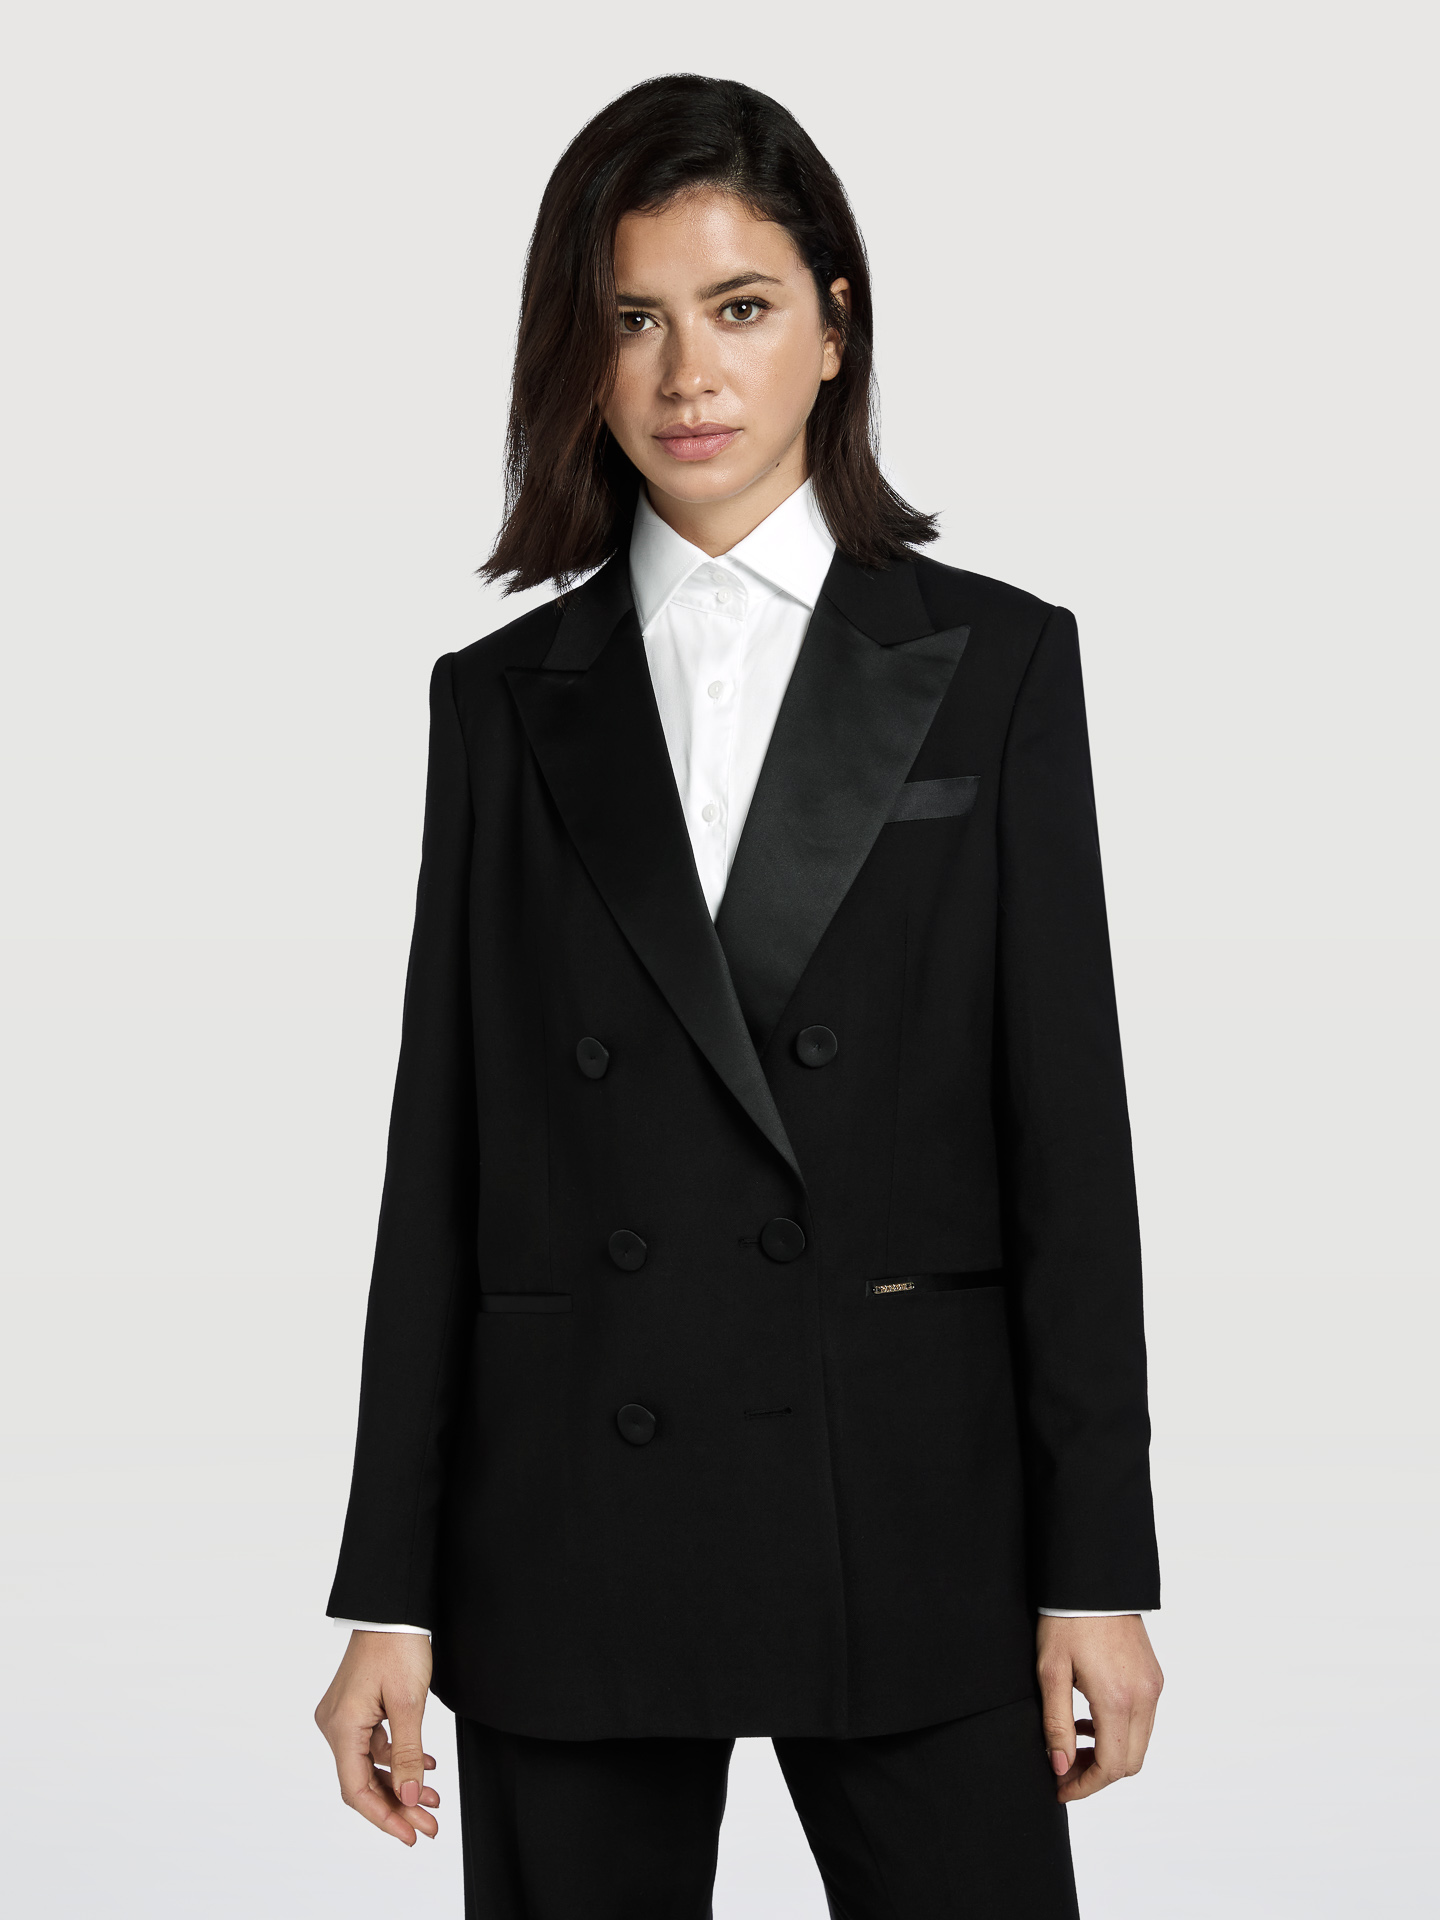 Suit Blazer Black Classic Woman